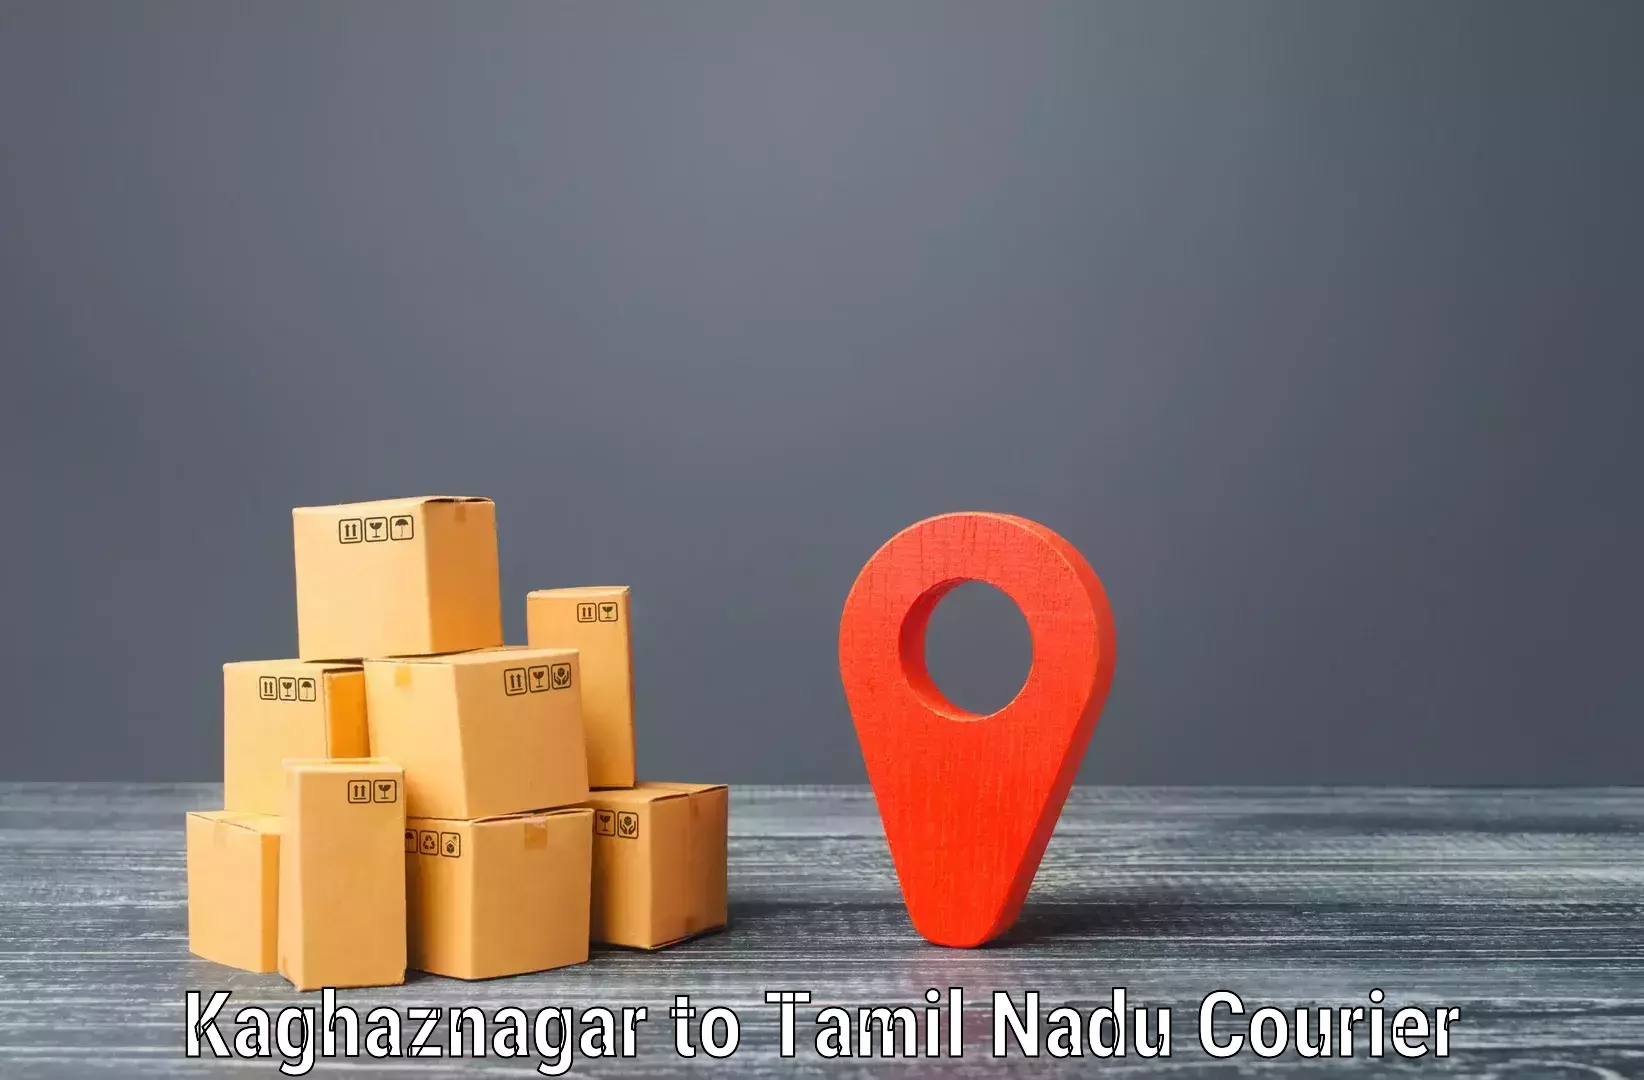 Secure package delivery Kaghaznagar to Nanguneri